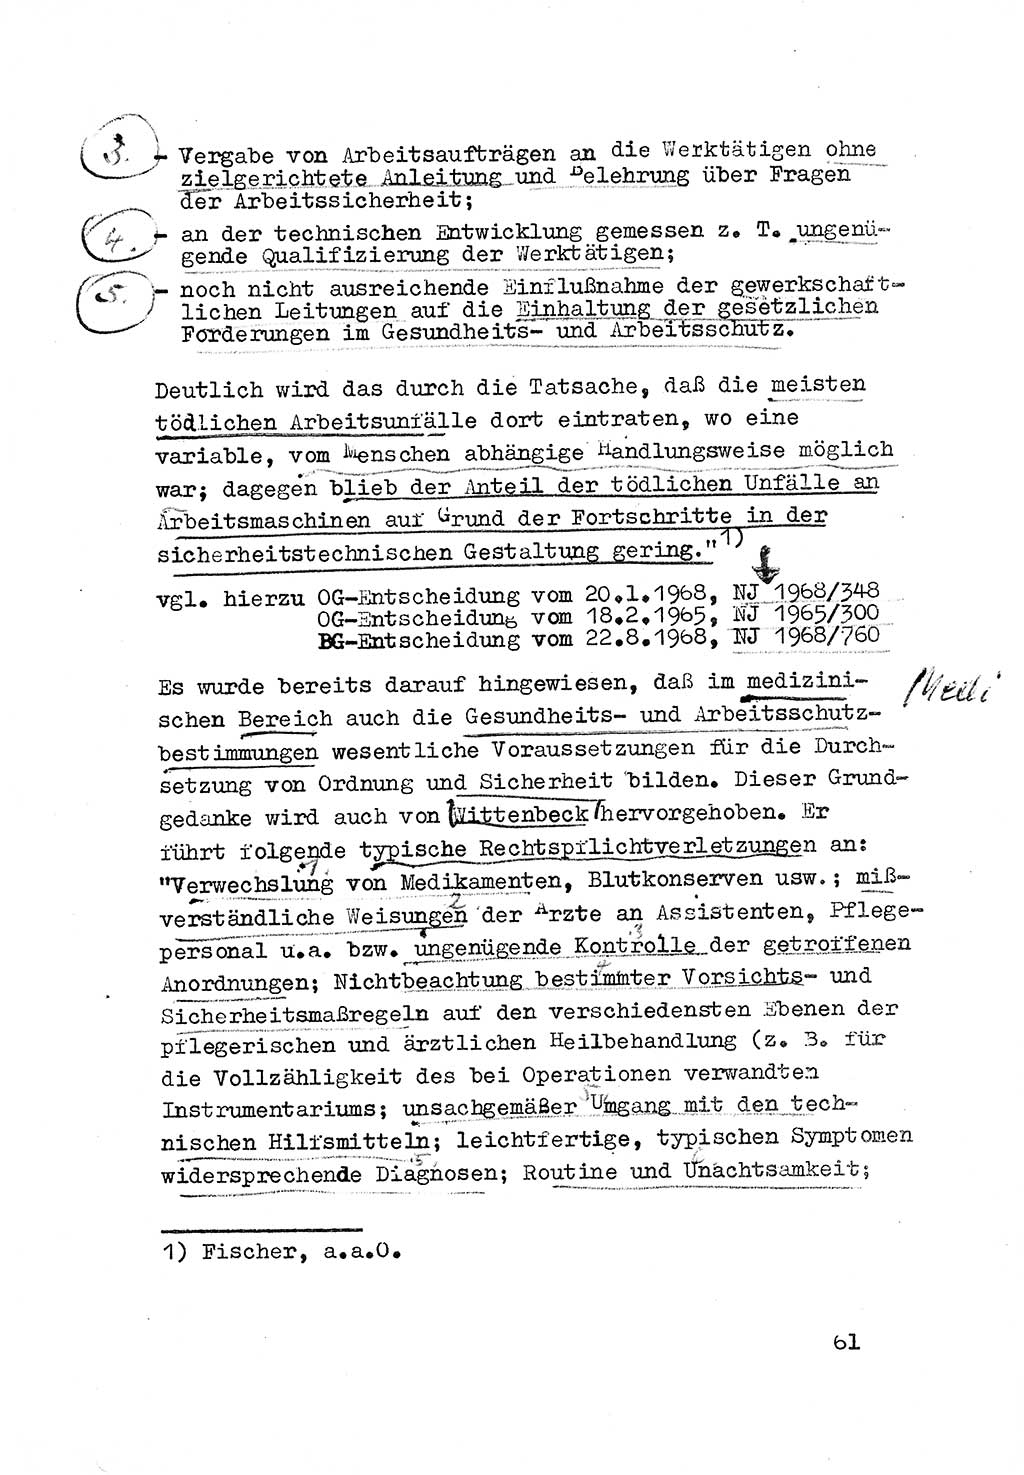 Strafrecht der DDR (Deutsche Demokratische Republik), Besonderer Teil, Lehrmaterial, Heft 3 1969, Seite 61 (Strafr. DDR BT Lehrmat. H. 3 1969, S. 61)